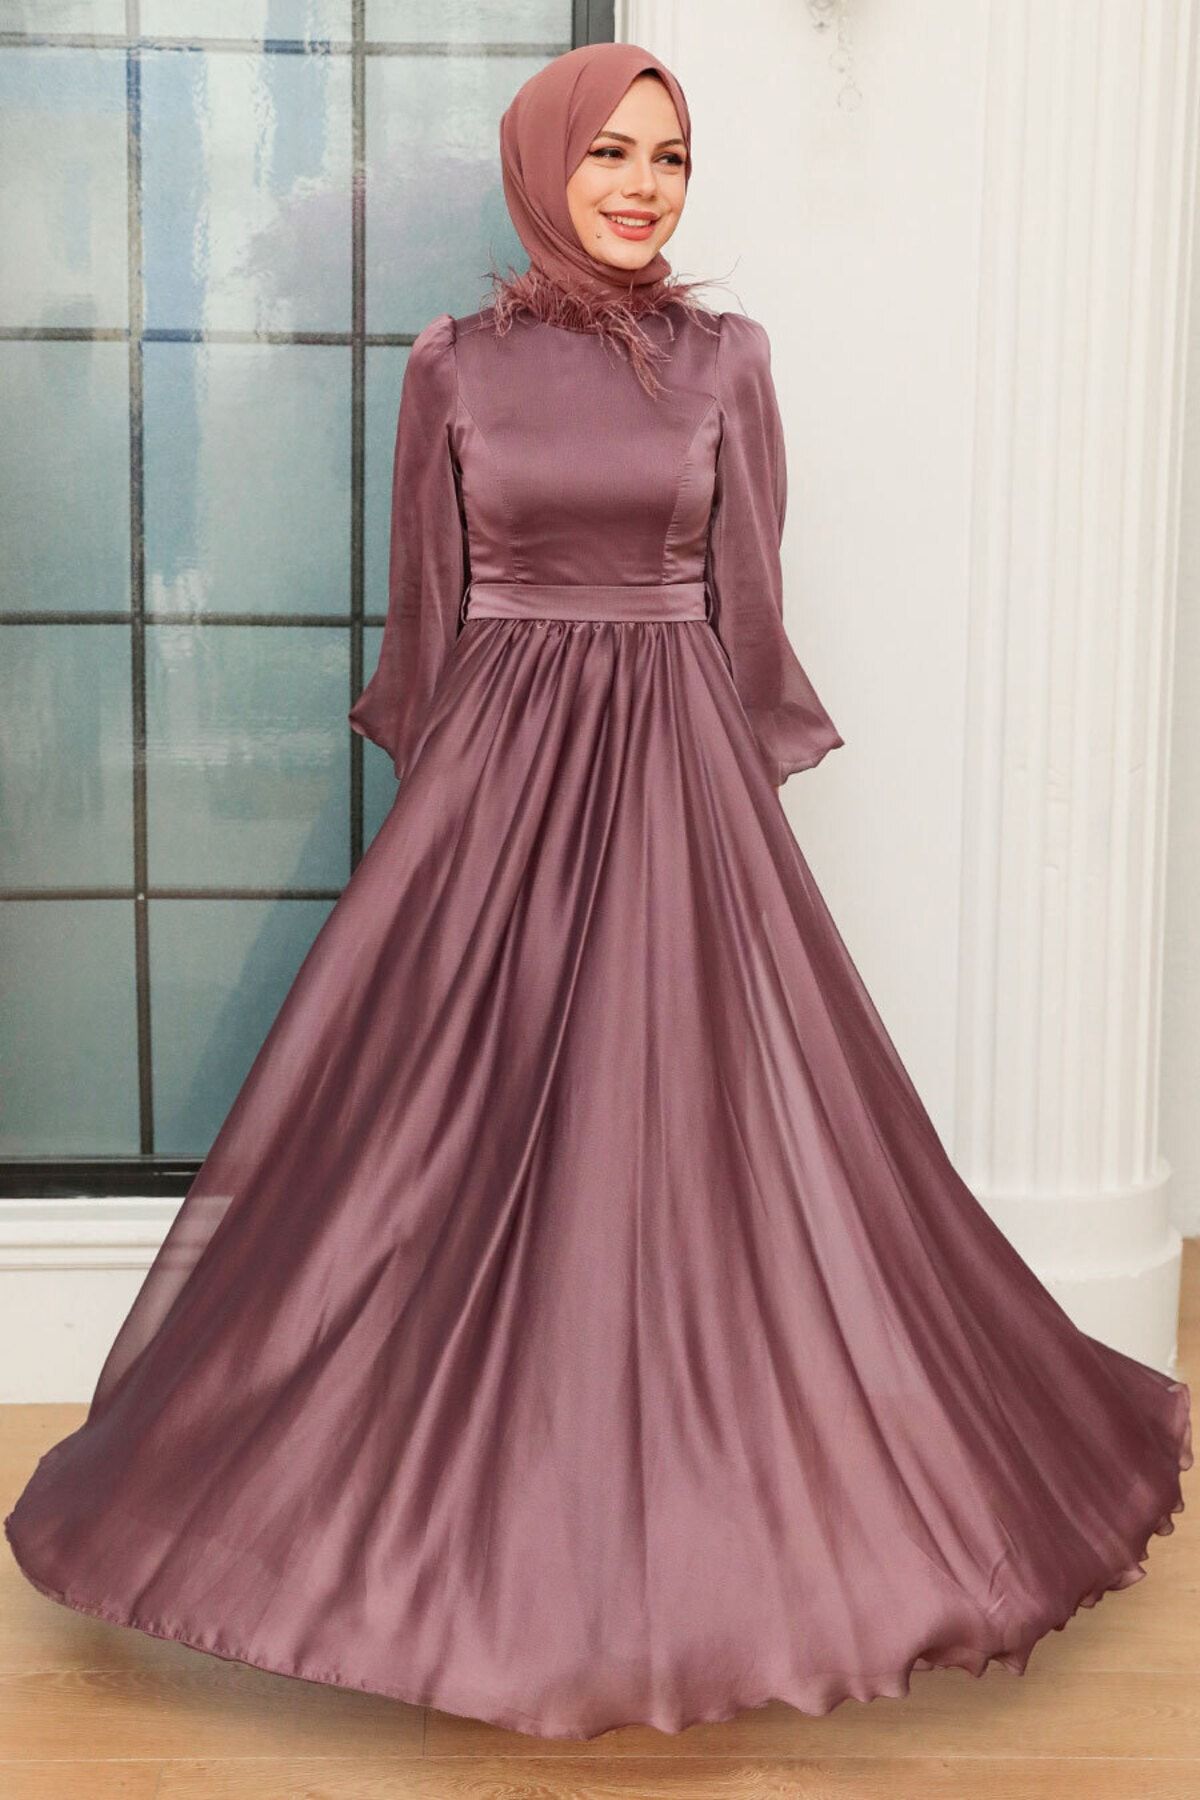 Neva Style Tesettürlü Abiye Elbise - Yakası Tüy Detaylı Koyu Gül Kurusu Tesettür Abiye Elbise 21330kgk